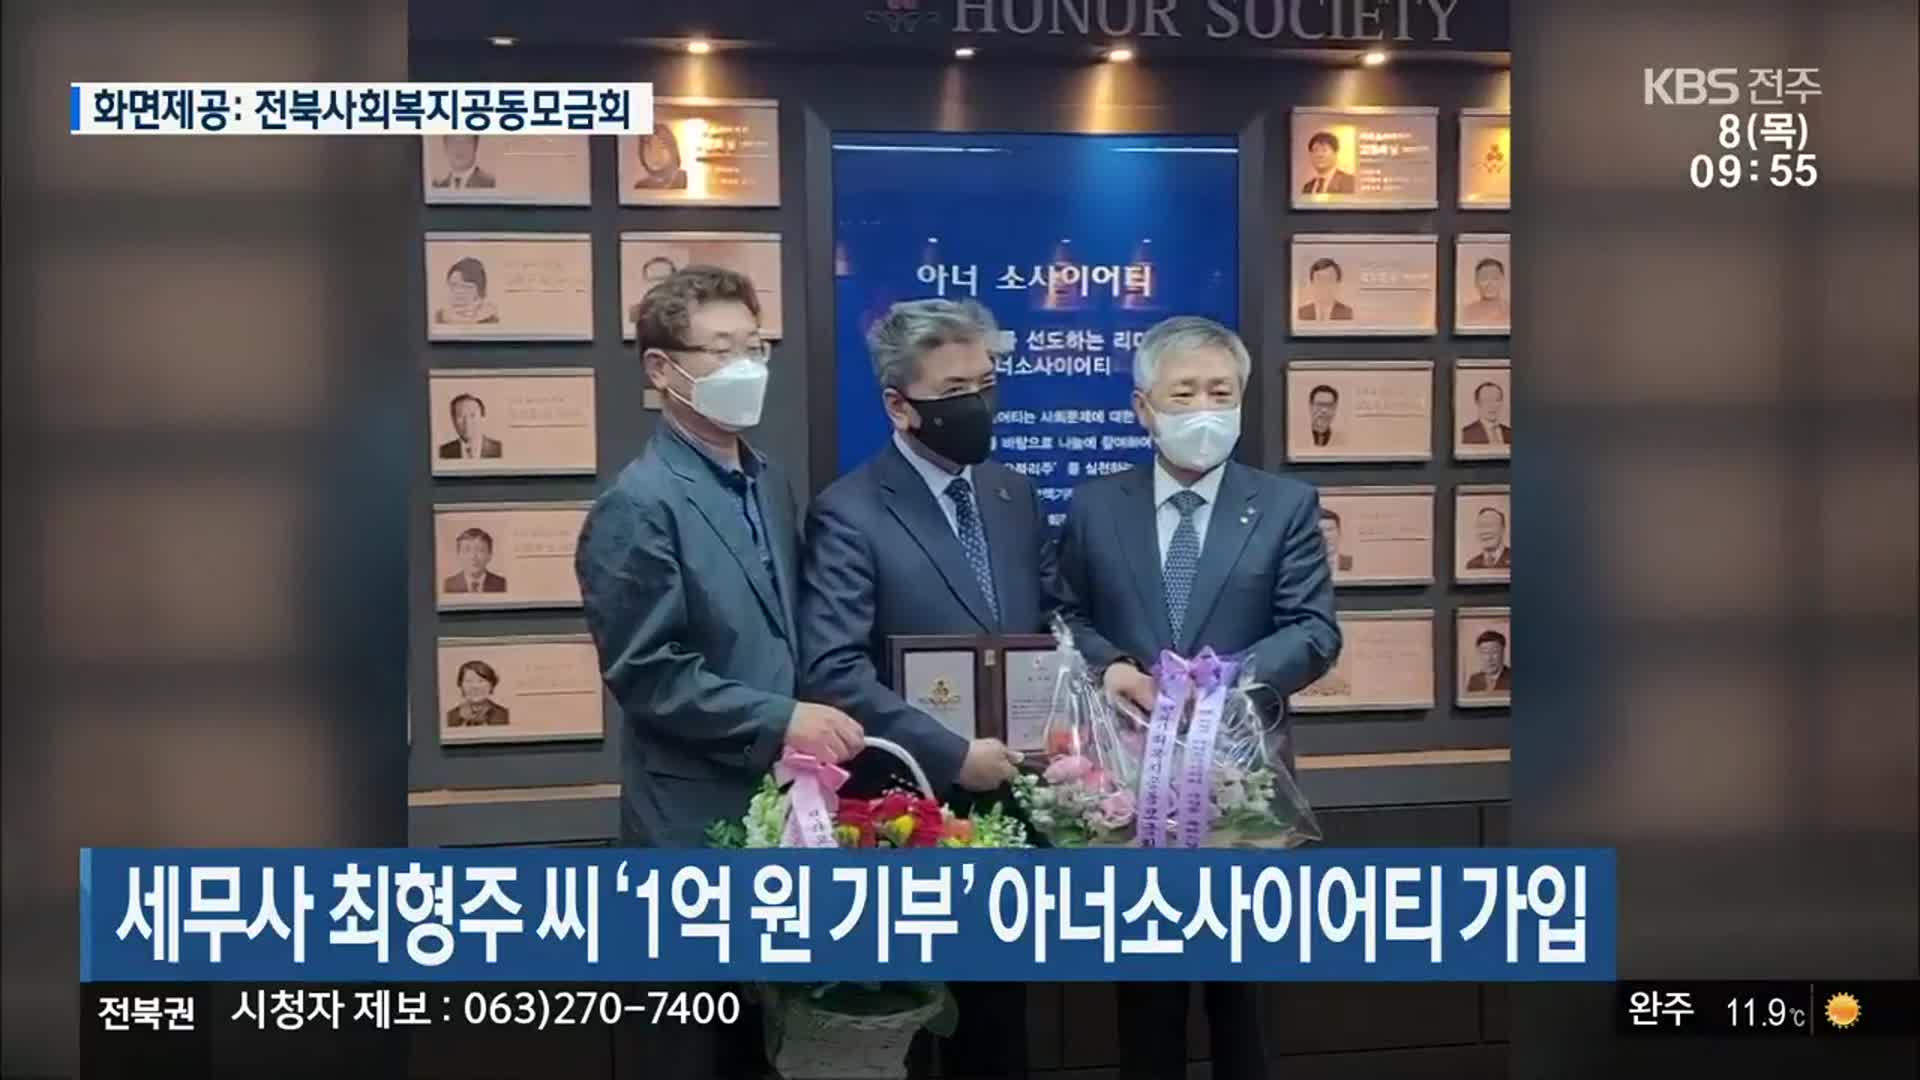 세무사 최형주 씨 ‘1억 원 기부’ 아너소사이어티 가입